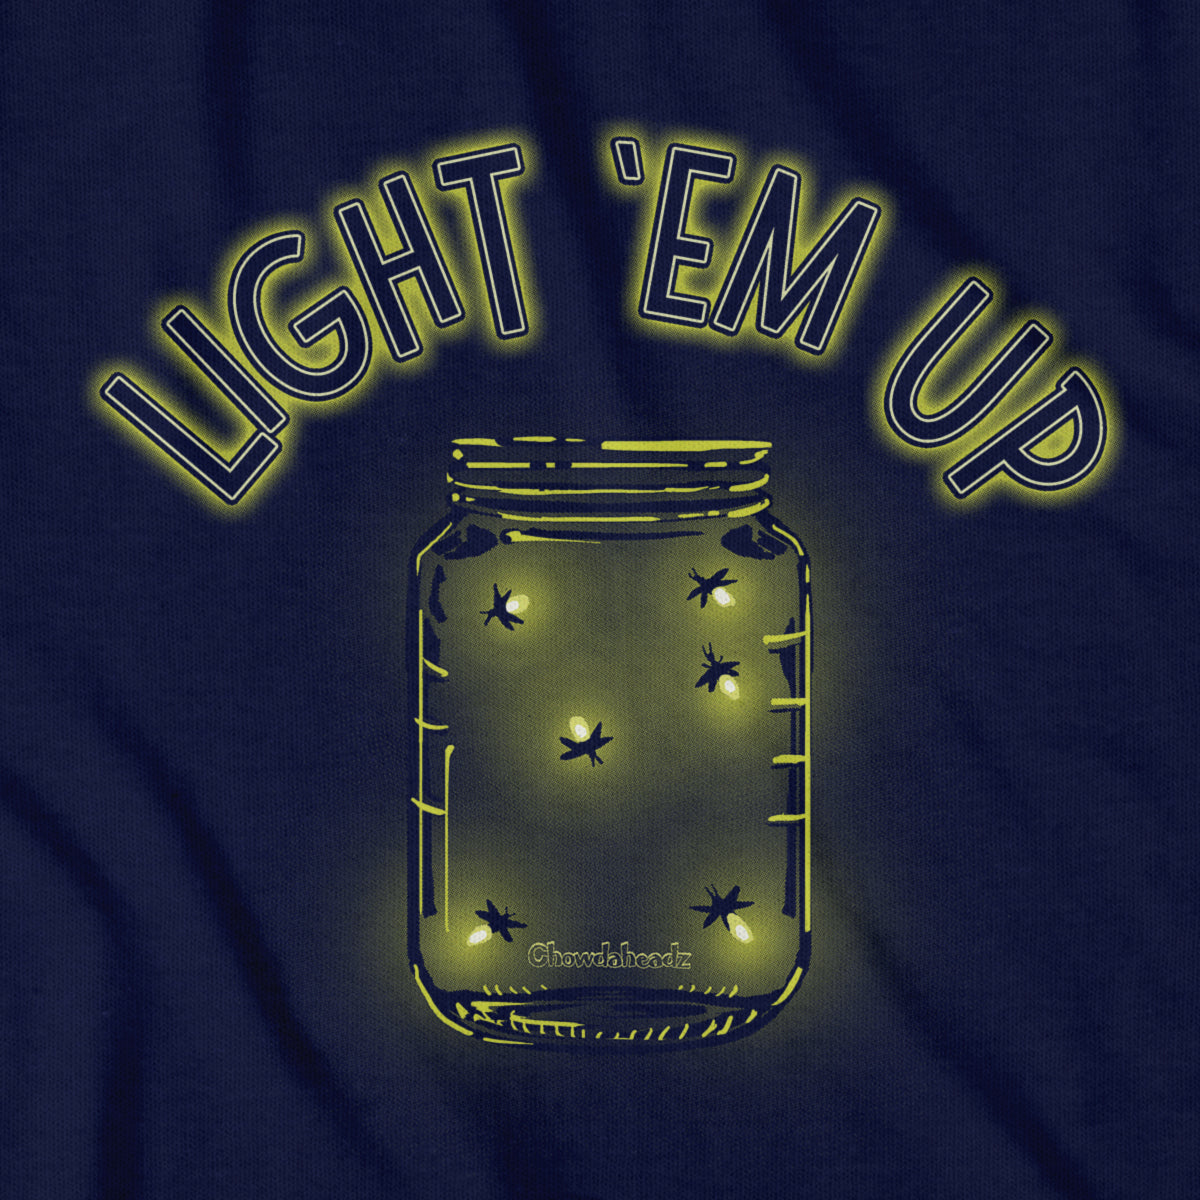 Light 'Em Up - Fireflies T-Shirt - Chowdaheadz